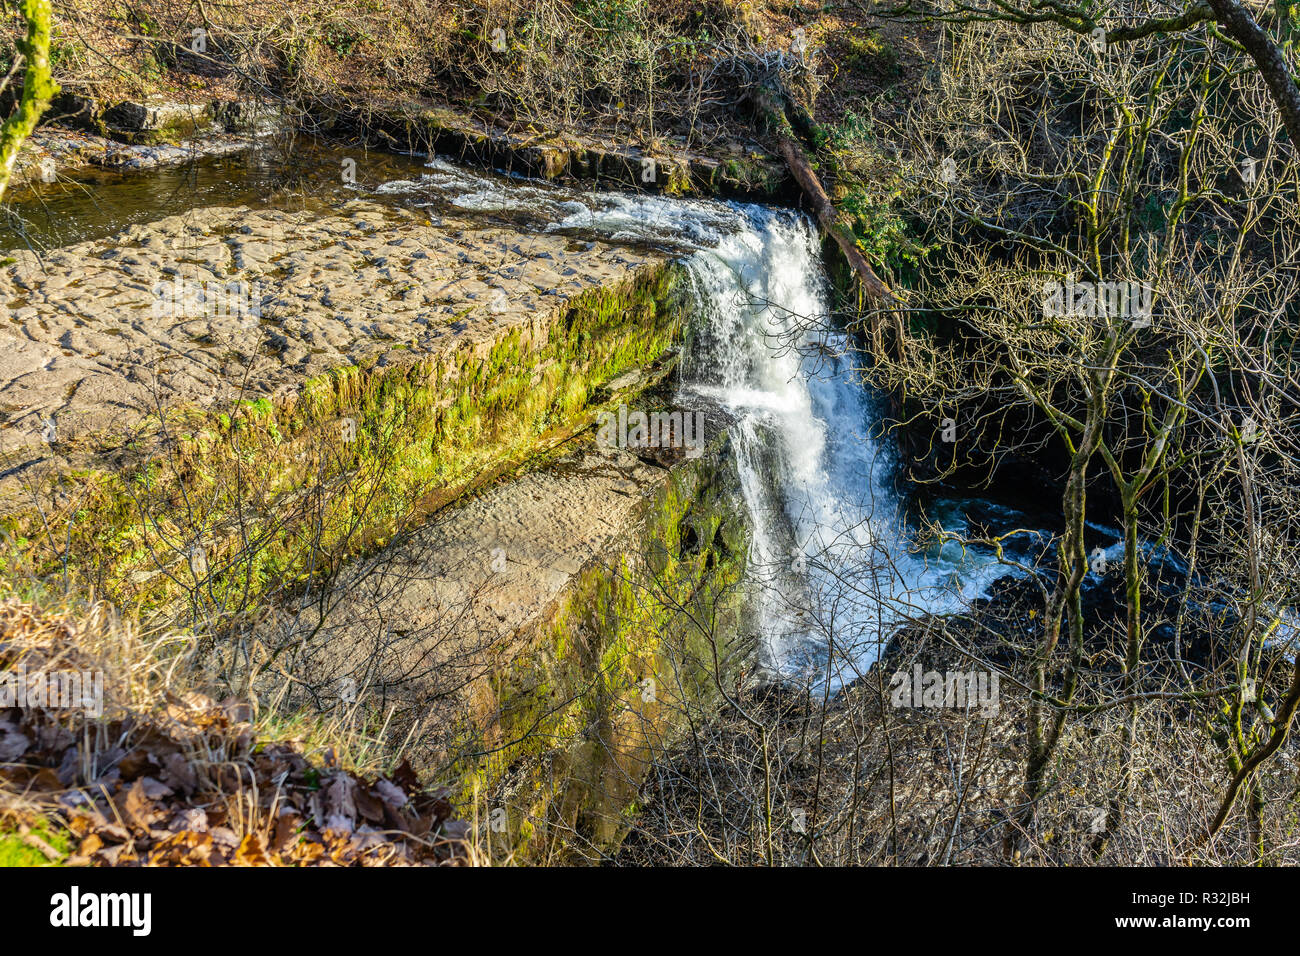 Der sgwd clun - gwyn Wasserfall im Fforest Fawr Geopark in die Brecon Beacons, Powys, Wales, Großbritannien Stockfoto